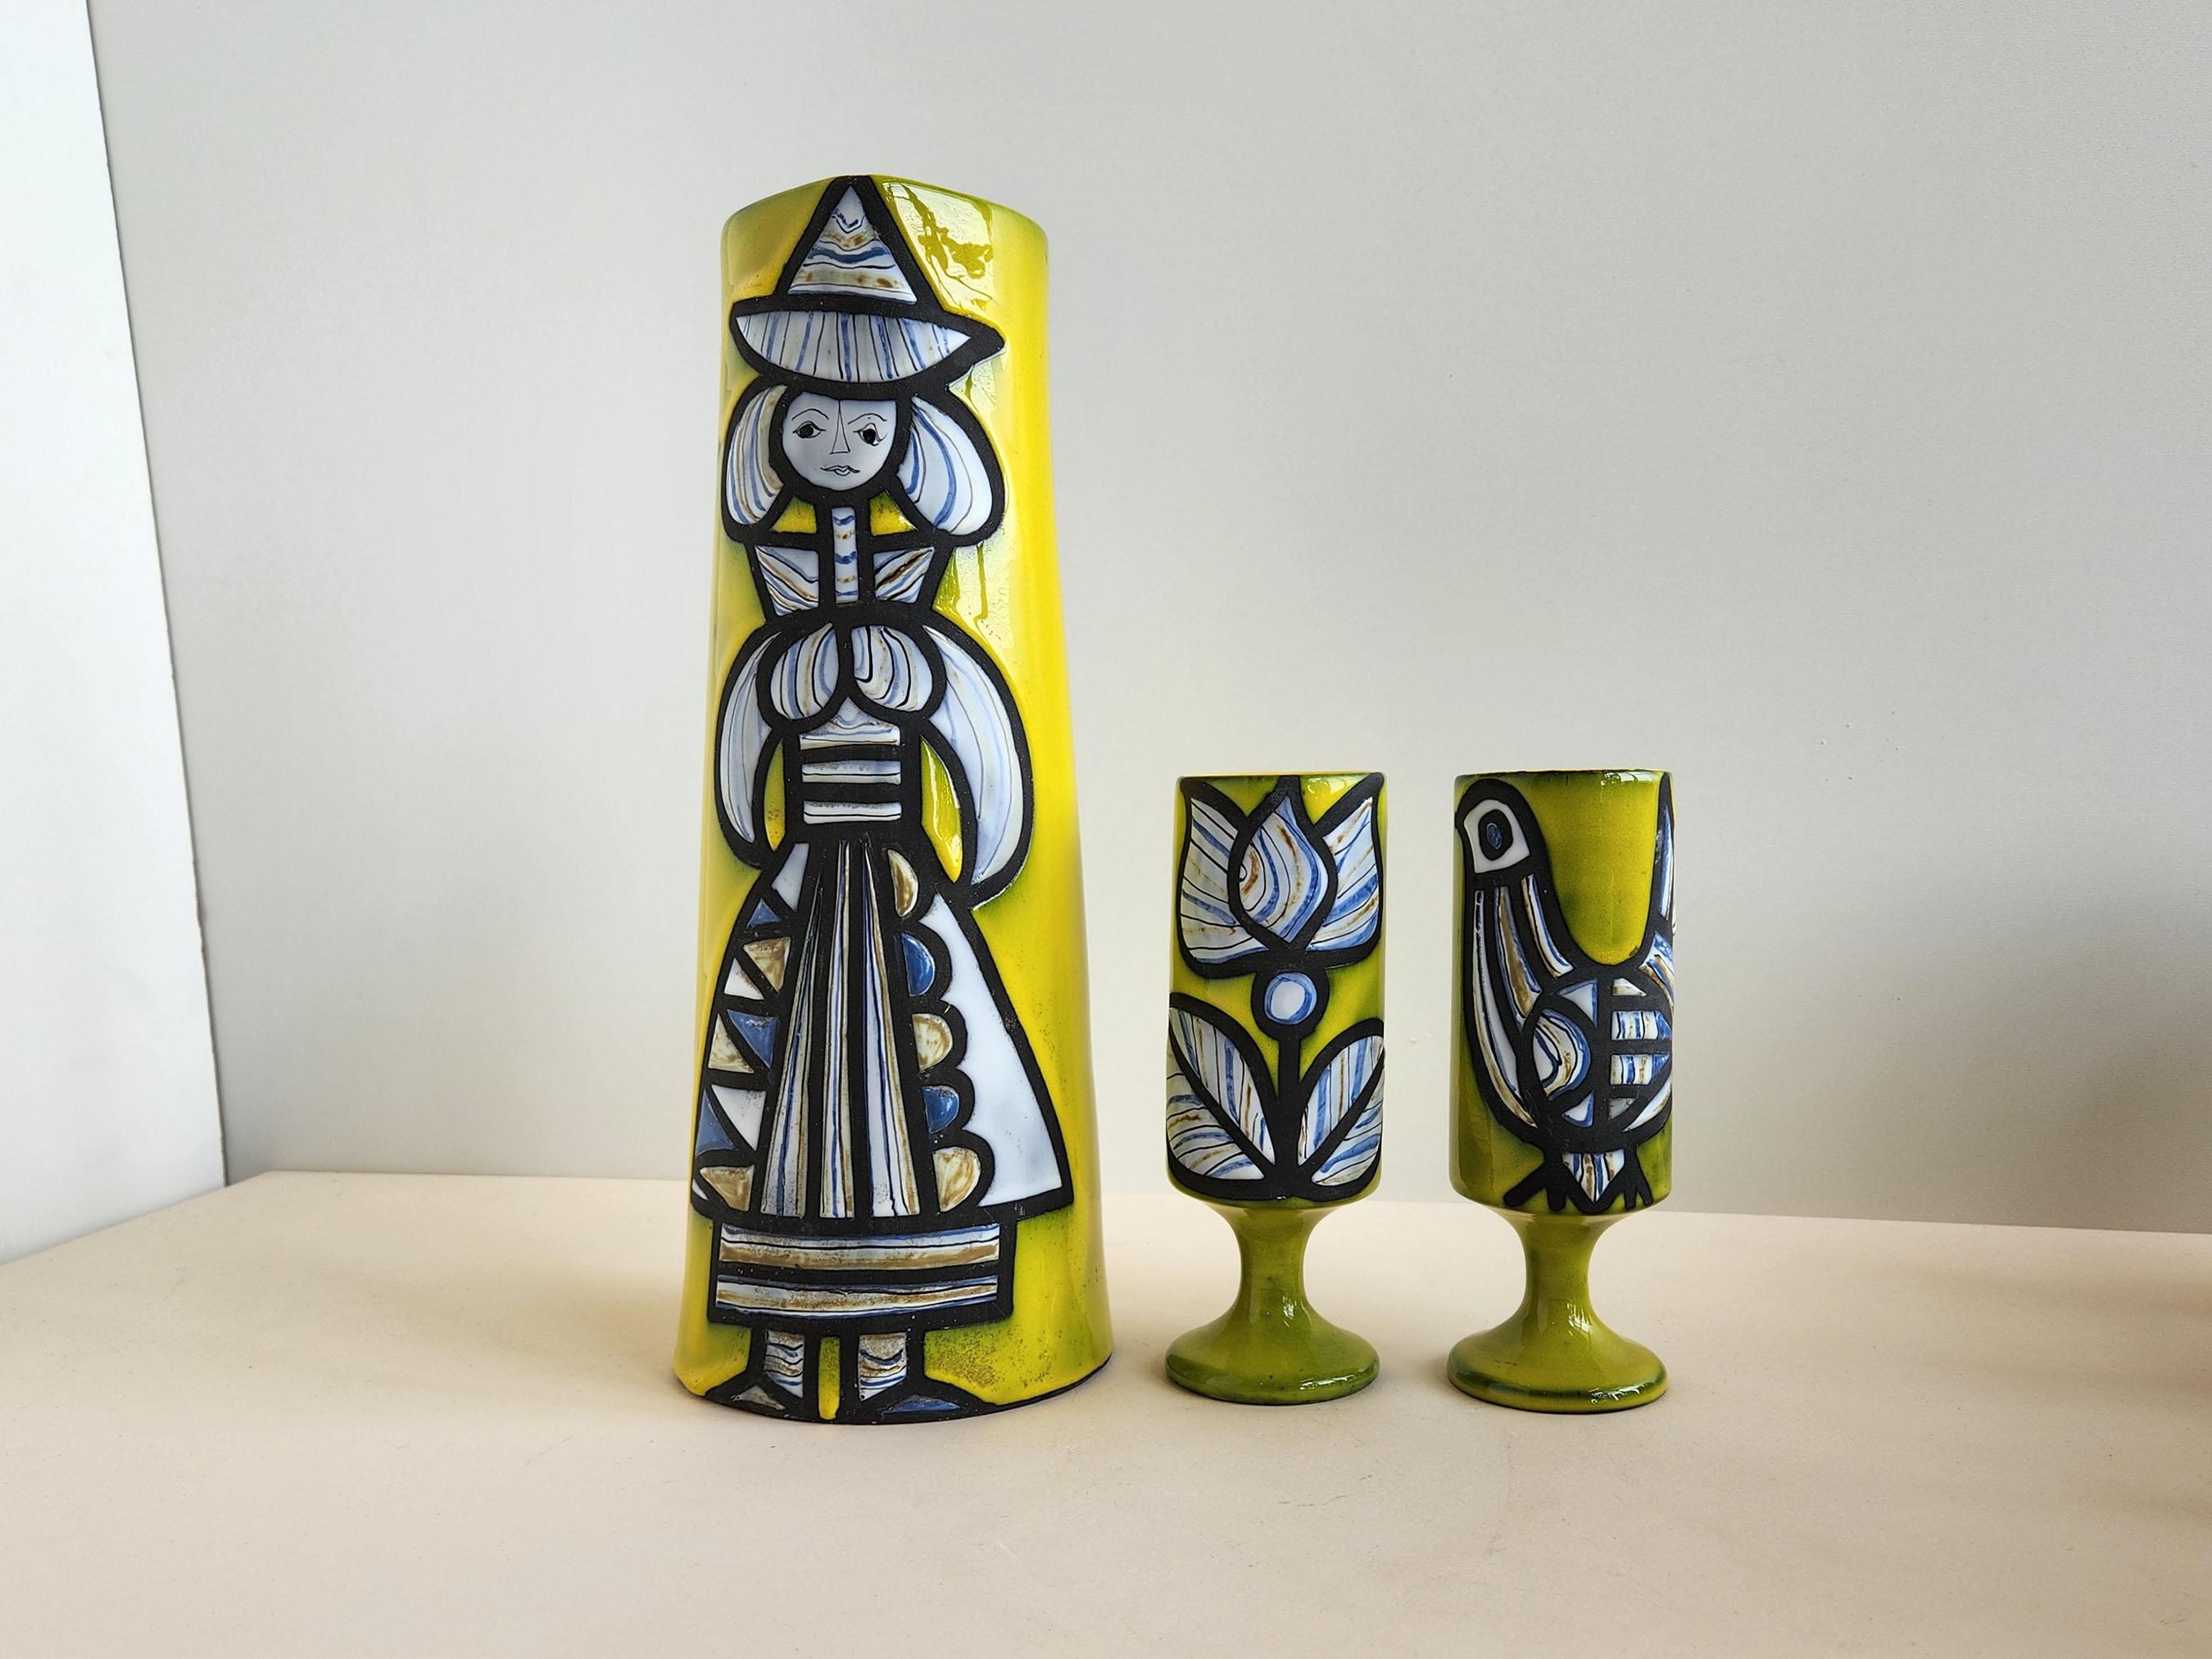 Vintage Keramik dekorative Krug und 2 Tassen unterzeichnet von Roger Capron - Vallauris, Frankreich

Roger Capron war ein einflussreicher französischer Keramiker, der für seine gekachelten Tische und die Verwendung wiederkehrender Motive wie